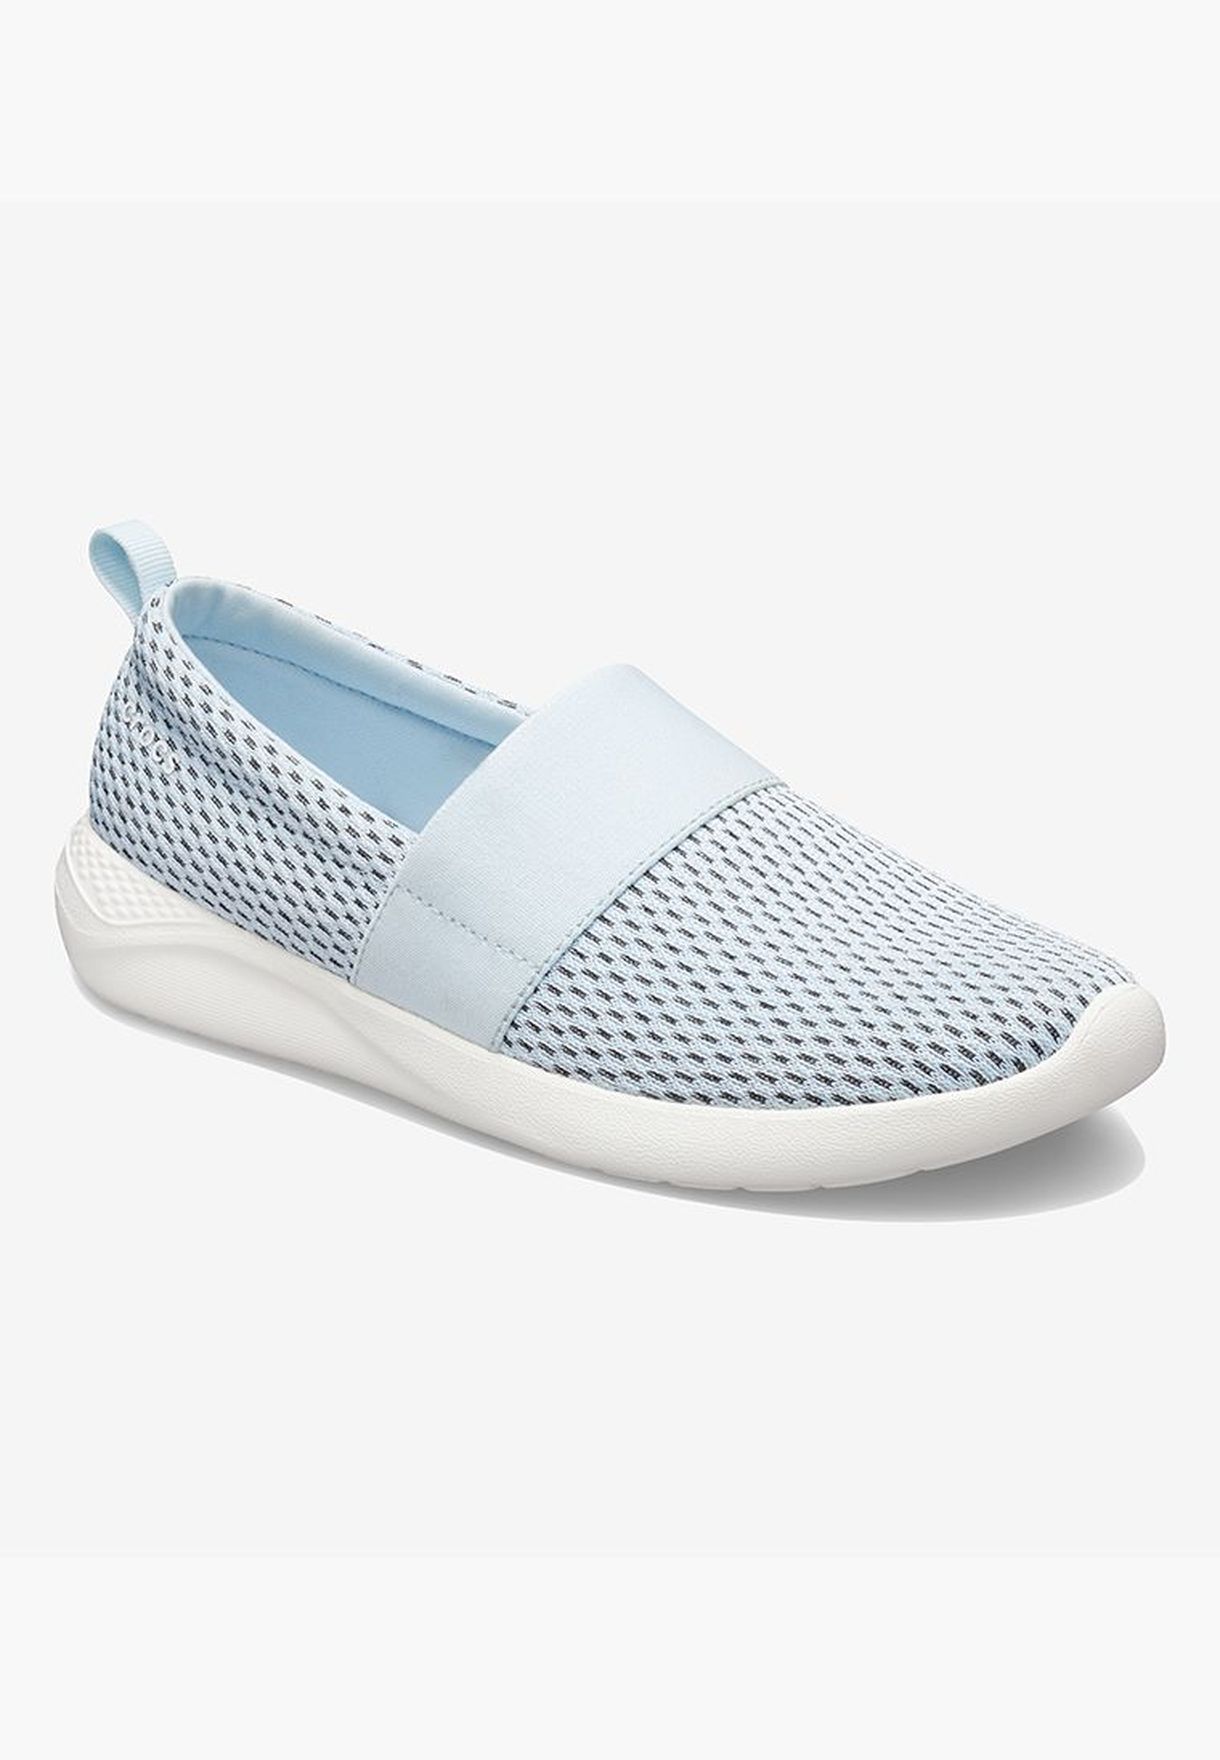 Buy Crocs blue literide mesh slip on w 